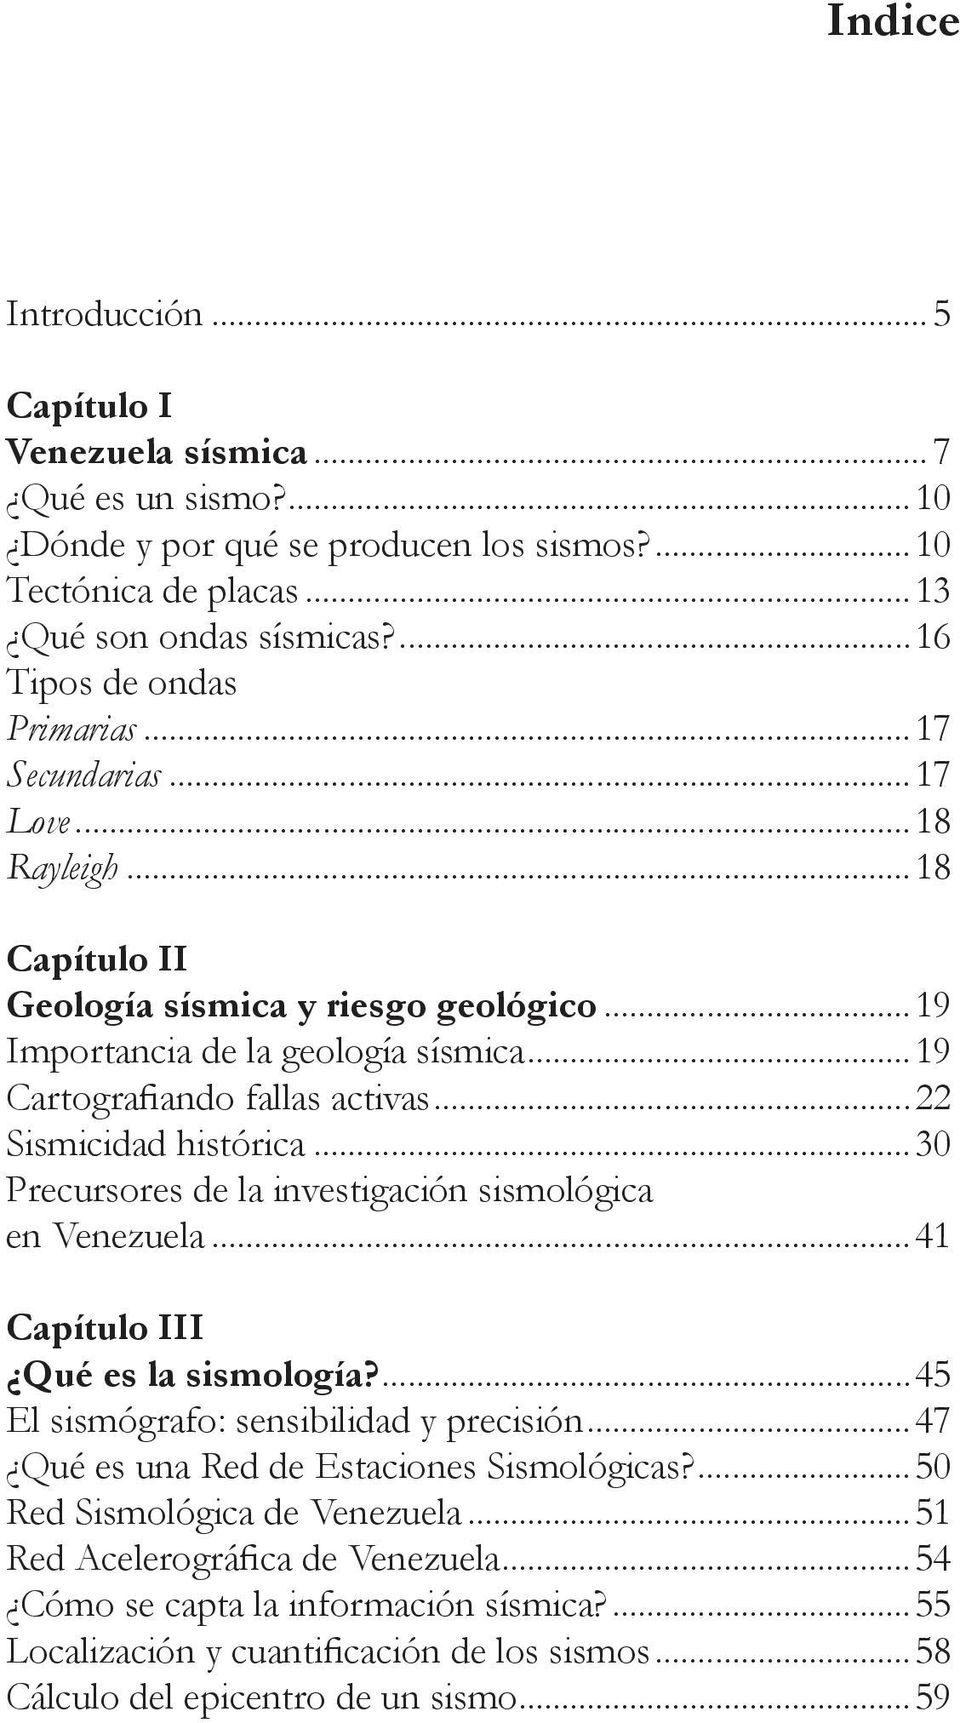 ..22 Sismicidad histórica...30 Precursores de la investigación sismológica en Venezuela...41 Capítulo III Qué es la sismología?...45 El sismógrafo: sensibilidad y precisión.